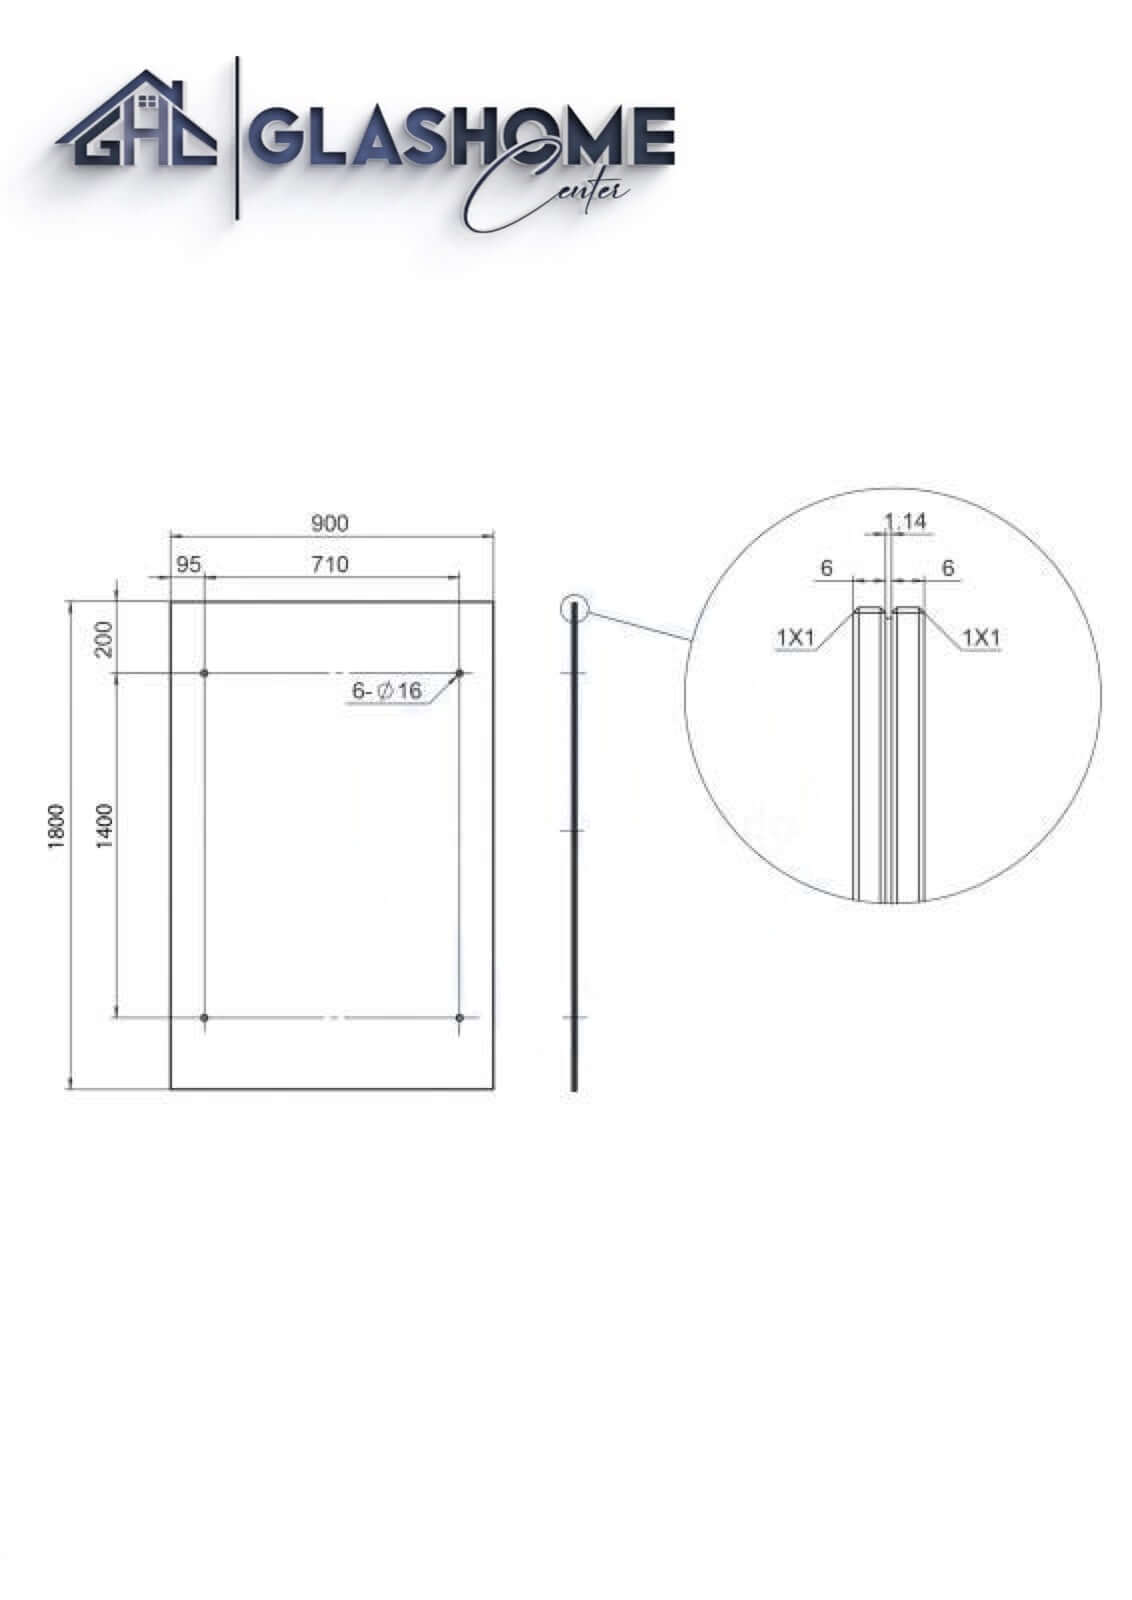 GlasHomeCenter - Glasvordach - Milchglas - 180x90cm - 13.1mm VSG - inkl. 2 Edelstahlhalterungen Variante "Rom"